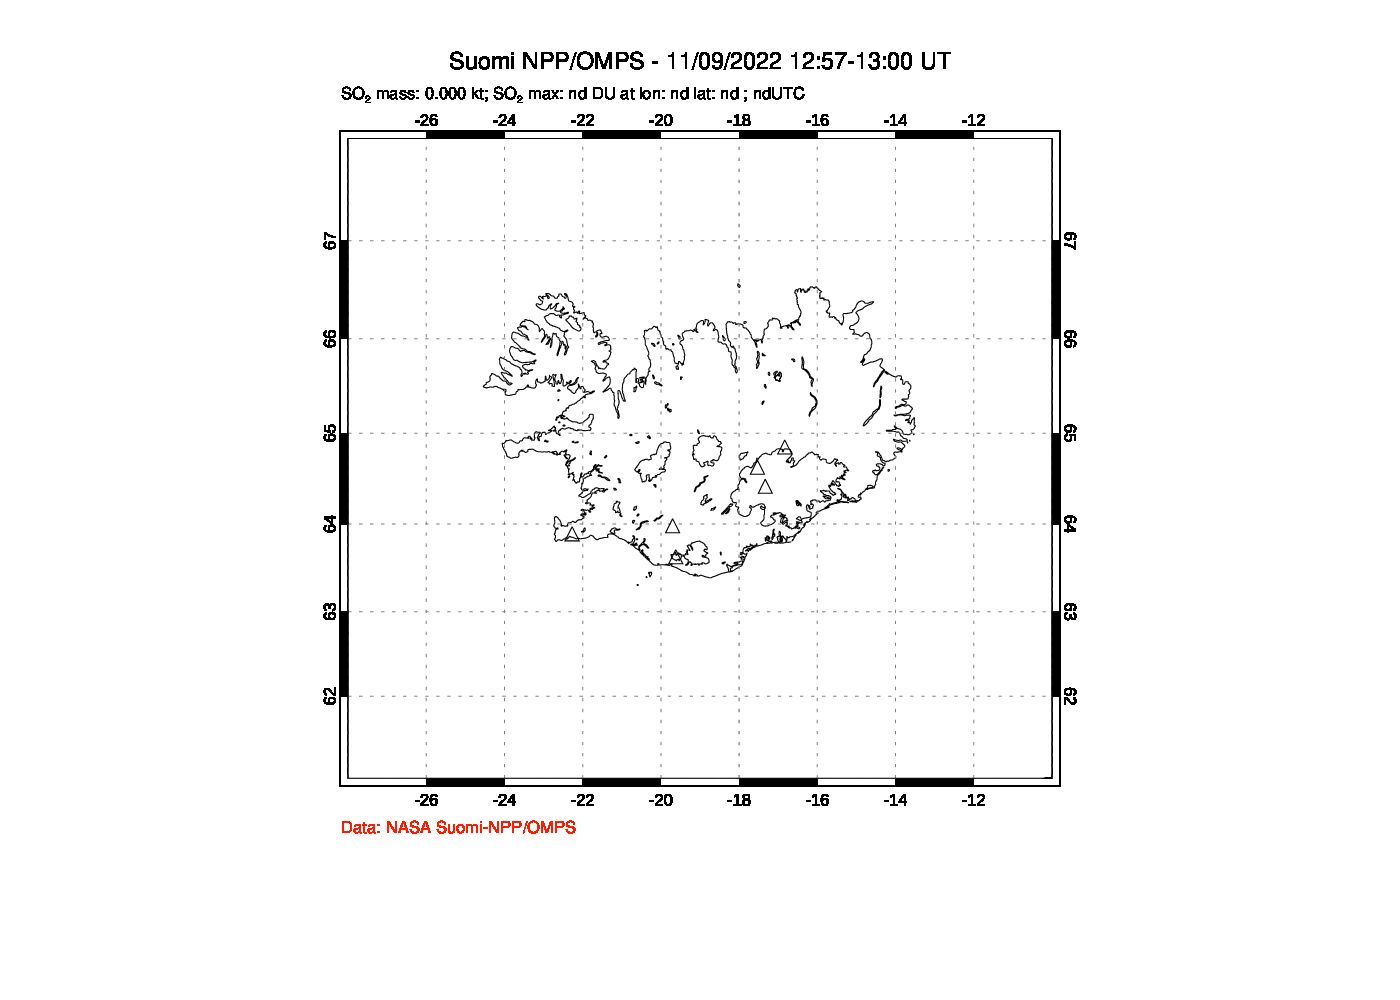 A sulfur dioxide image over Iceland on Nov 09, 2022.